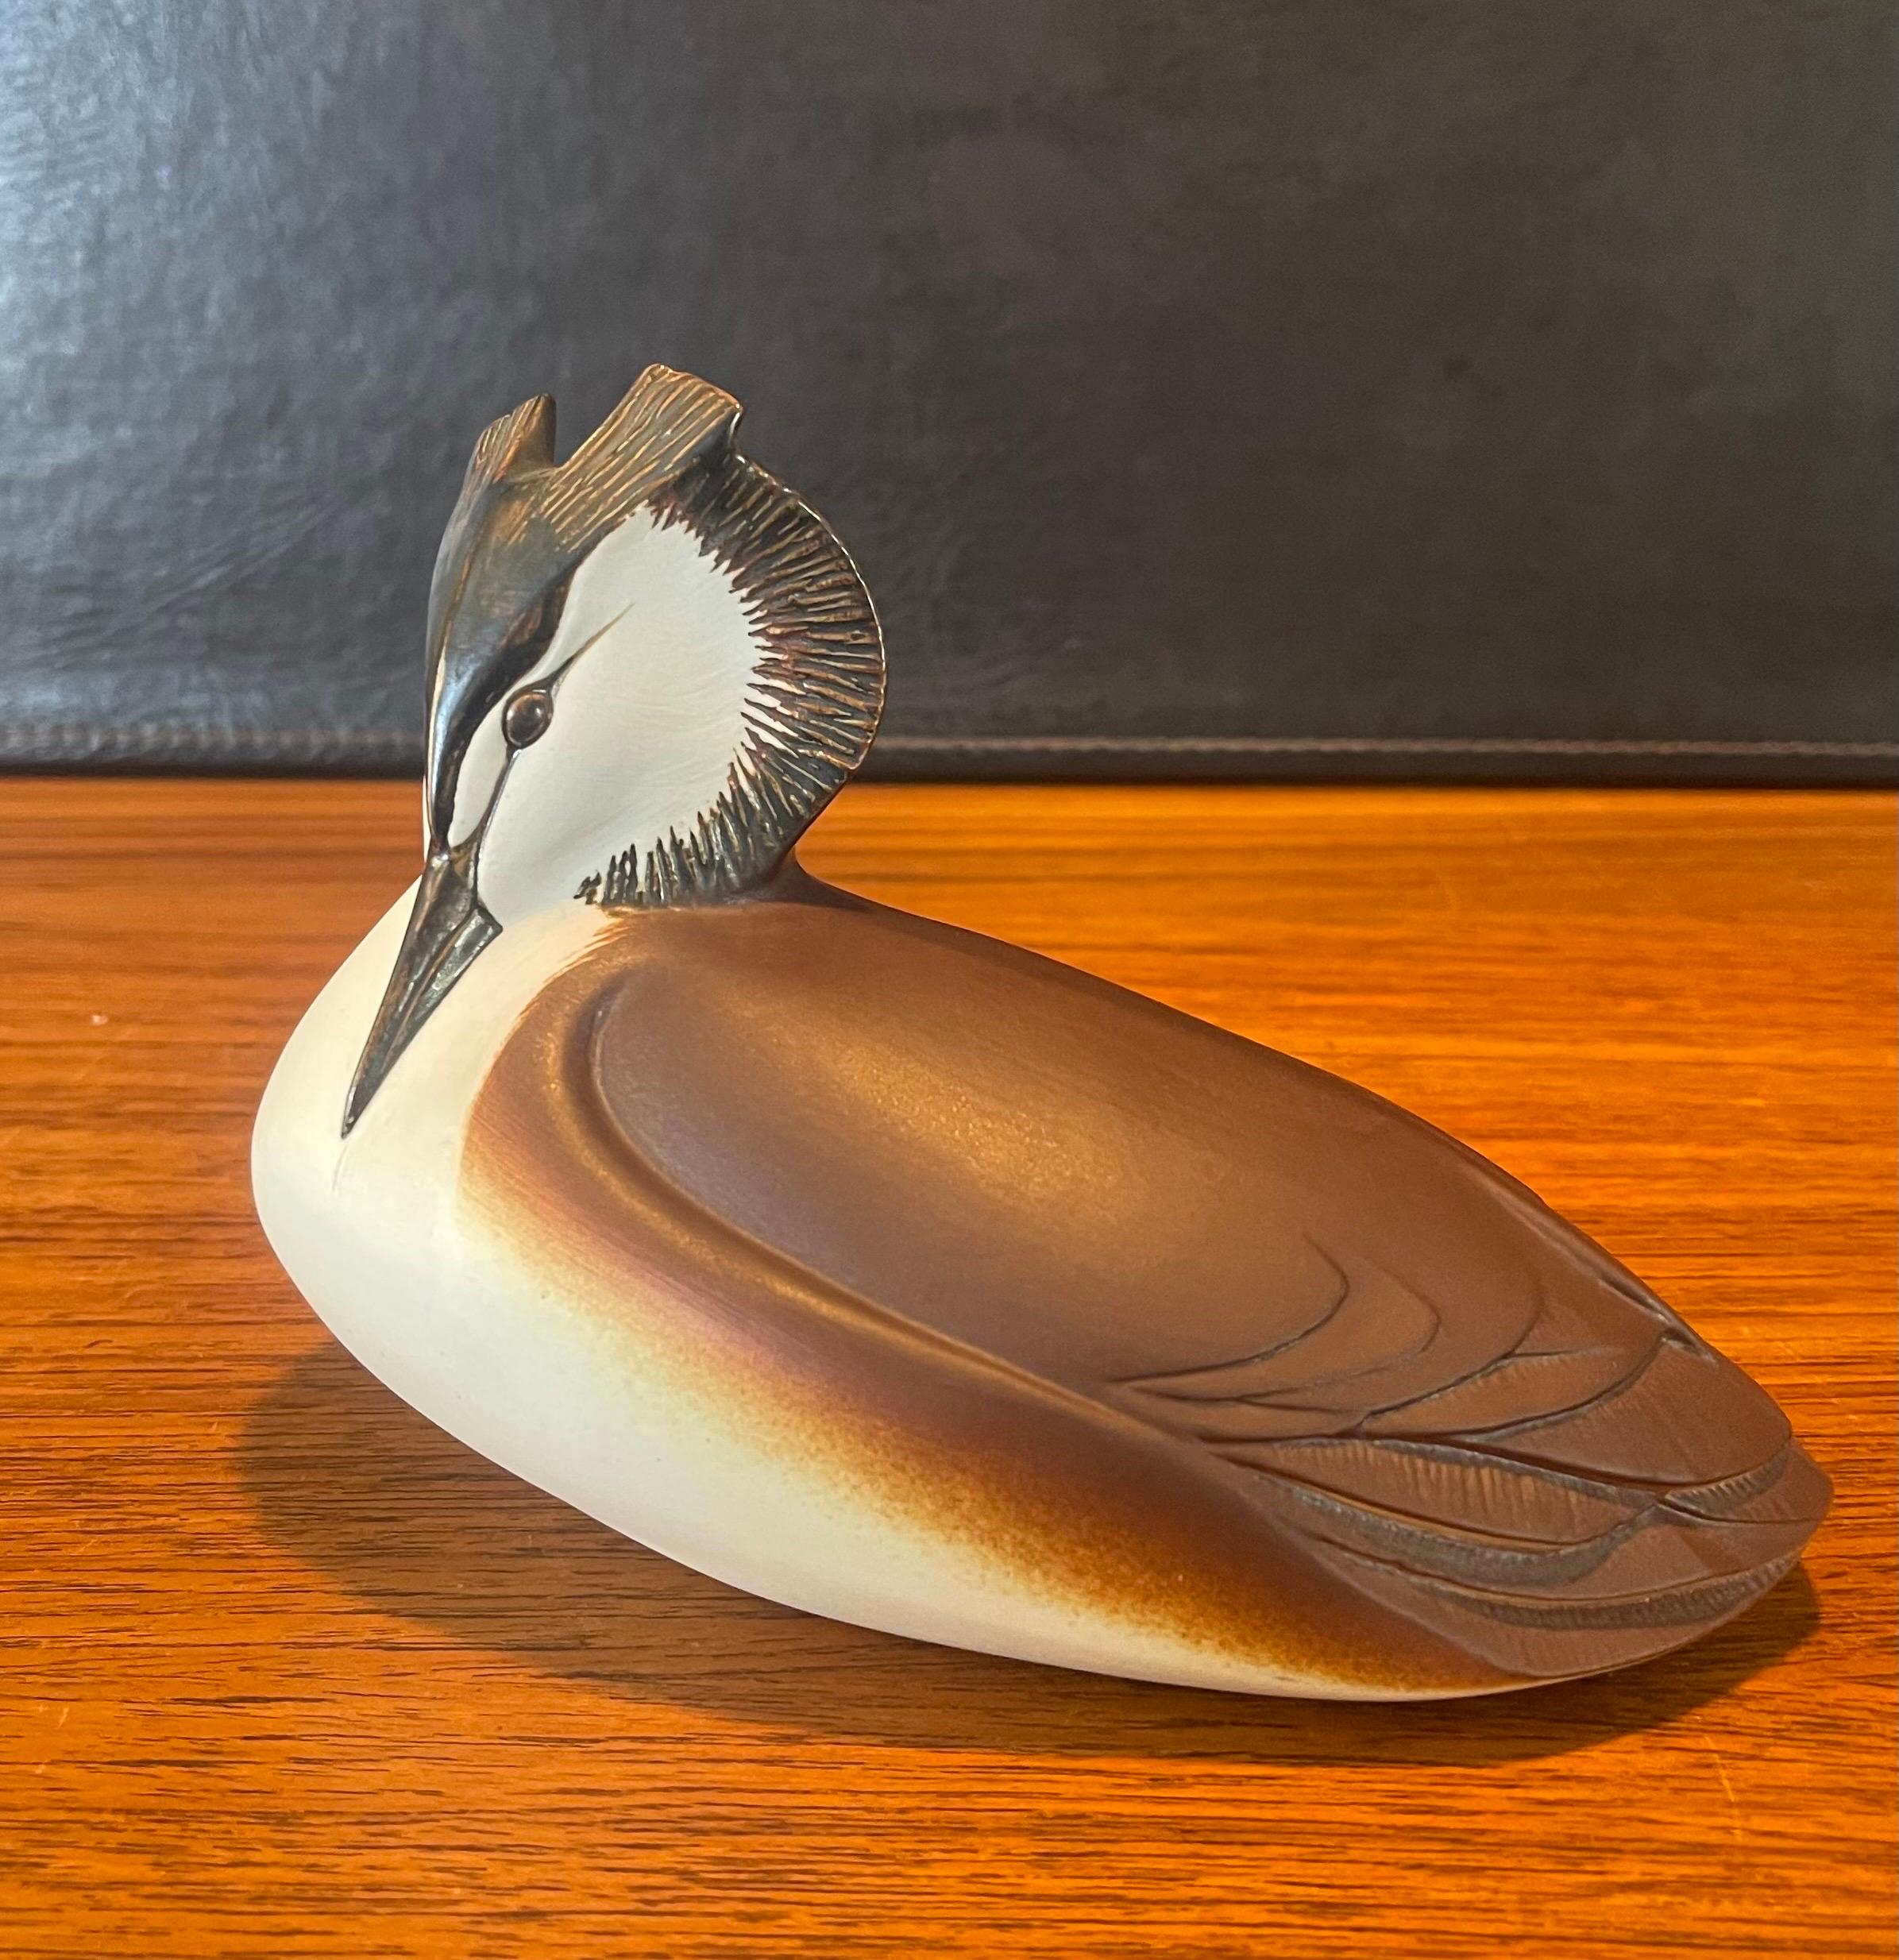 Vintage MCM ceramiche Vogelskulptur von Paul Hoff, ca. 1960er Jahre. Das Stück ist in sehr gutem Vintage-Zustand mit toller Farbe und Textur; es wäre eine fantastische Ergänzung für jede Sammlung aus der Mitte des Jahrhunderts. Der Vogel misst 7